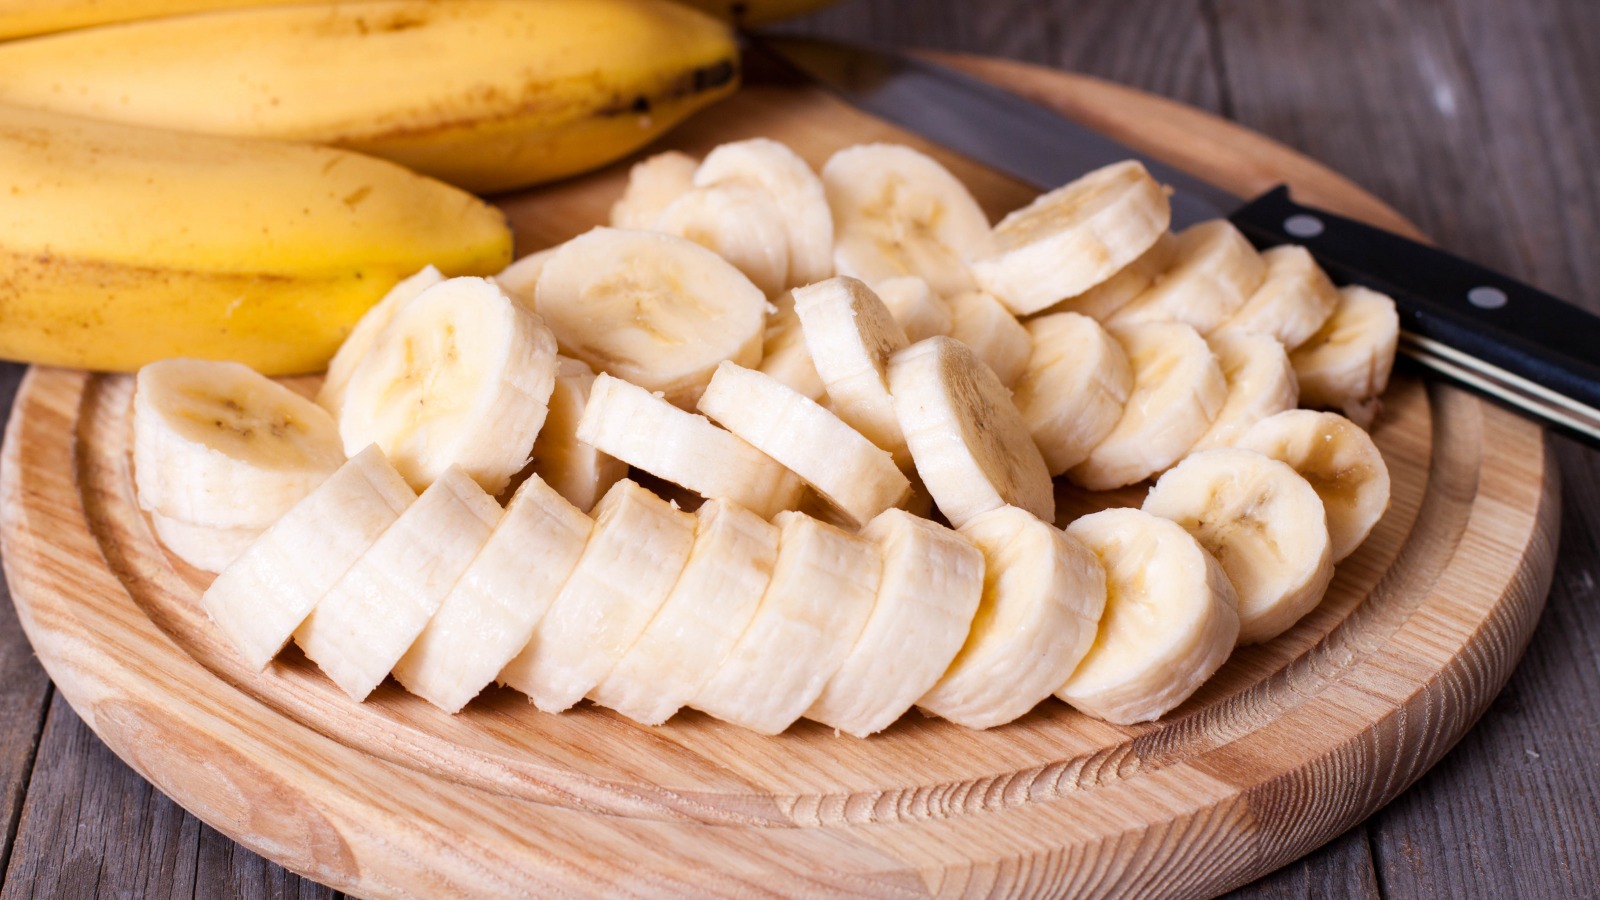 Healthy Banana Bread Recipes